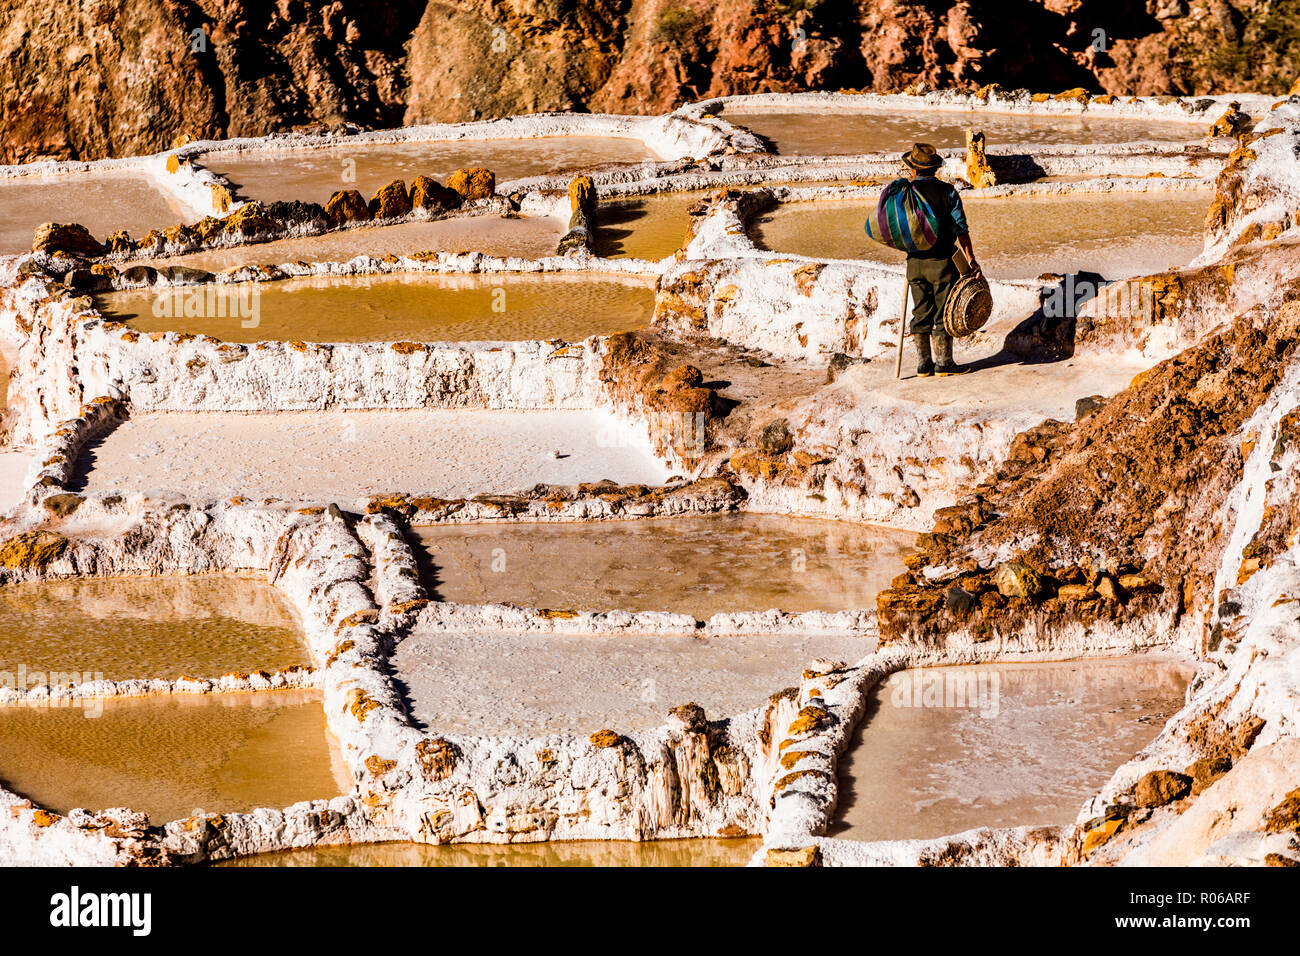 Terrasses de sel dans la vallée sacrée où les gens sont encore l'exploitation minière et de criblage des piscines en terrasses comme les Incas n il y a 1000 ans, le Pérou, Amérique du Sud Banque D'Images